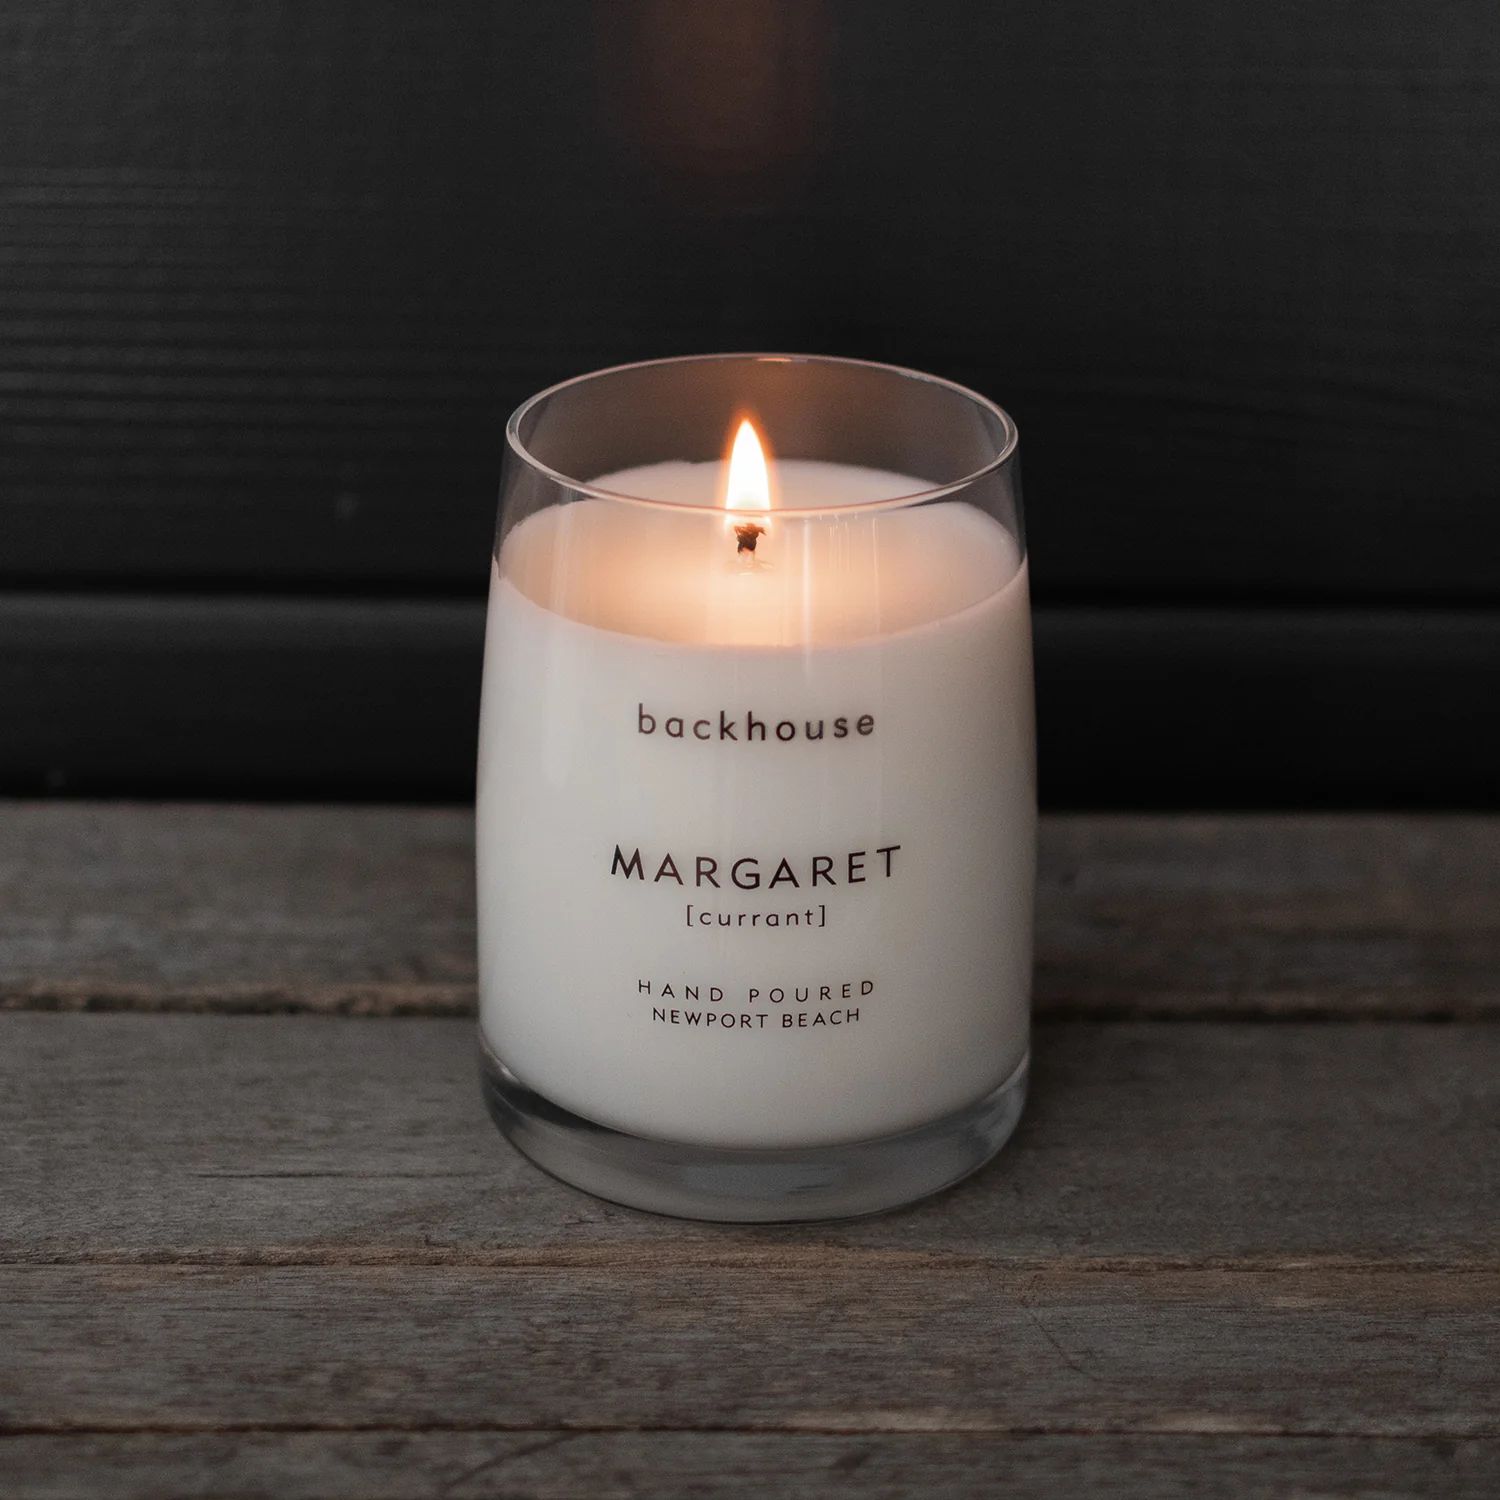 MARGARET [currant] | backhouse fragrances